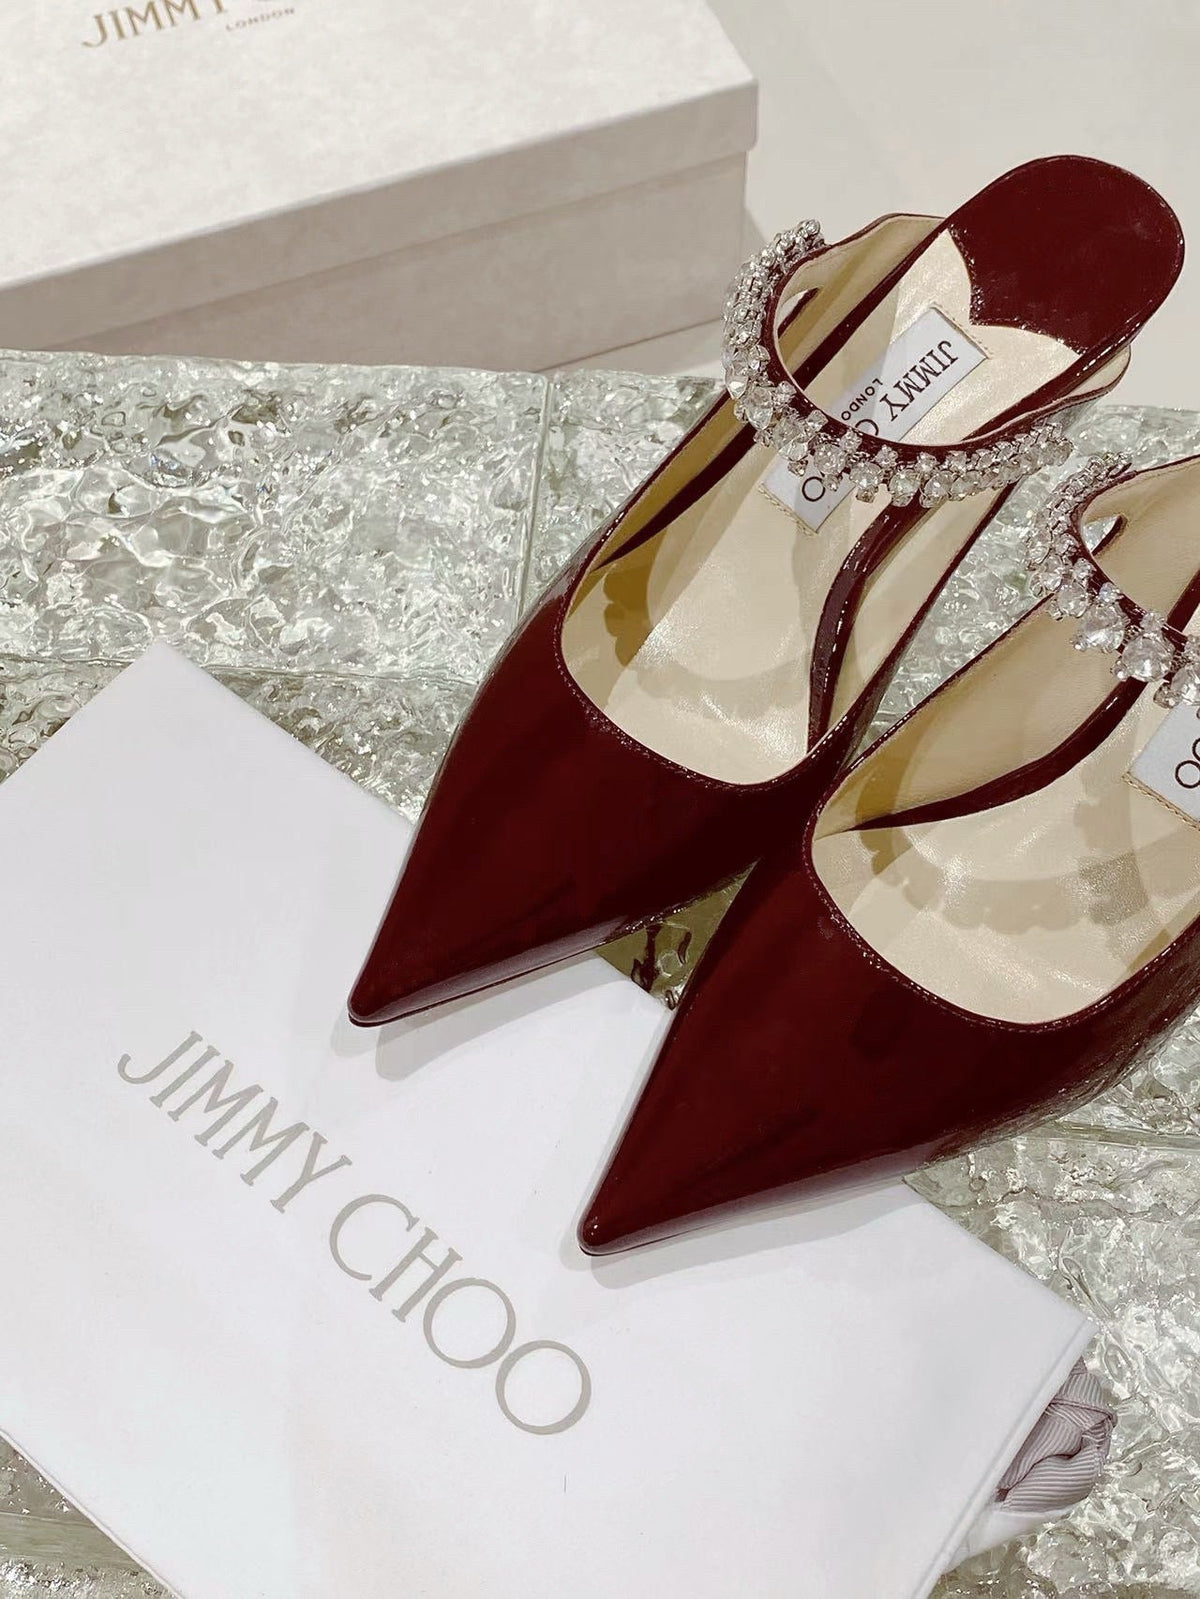 Jimmy choo high heels - Rachellebags